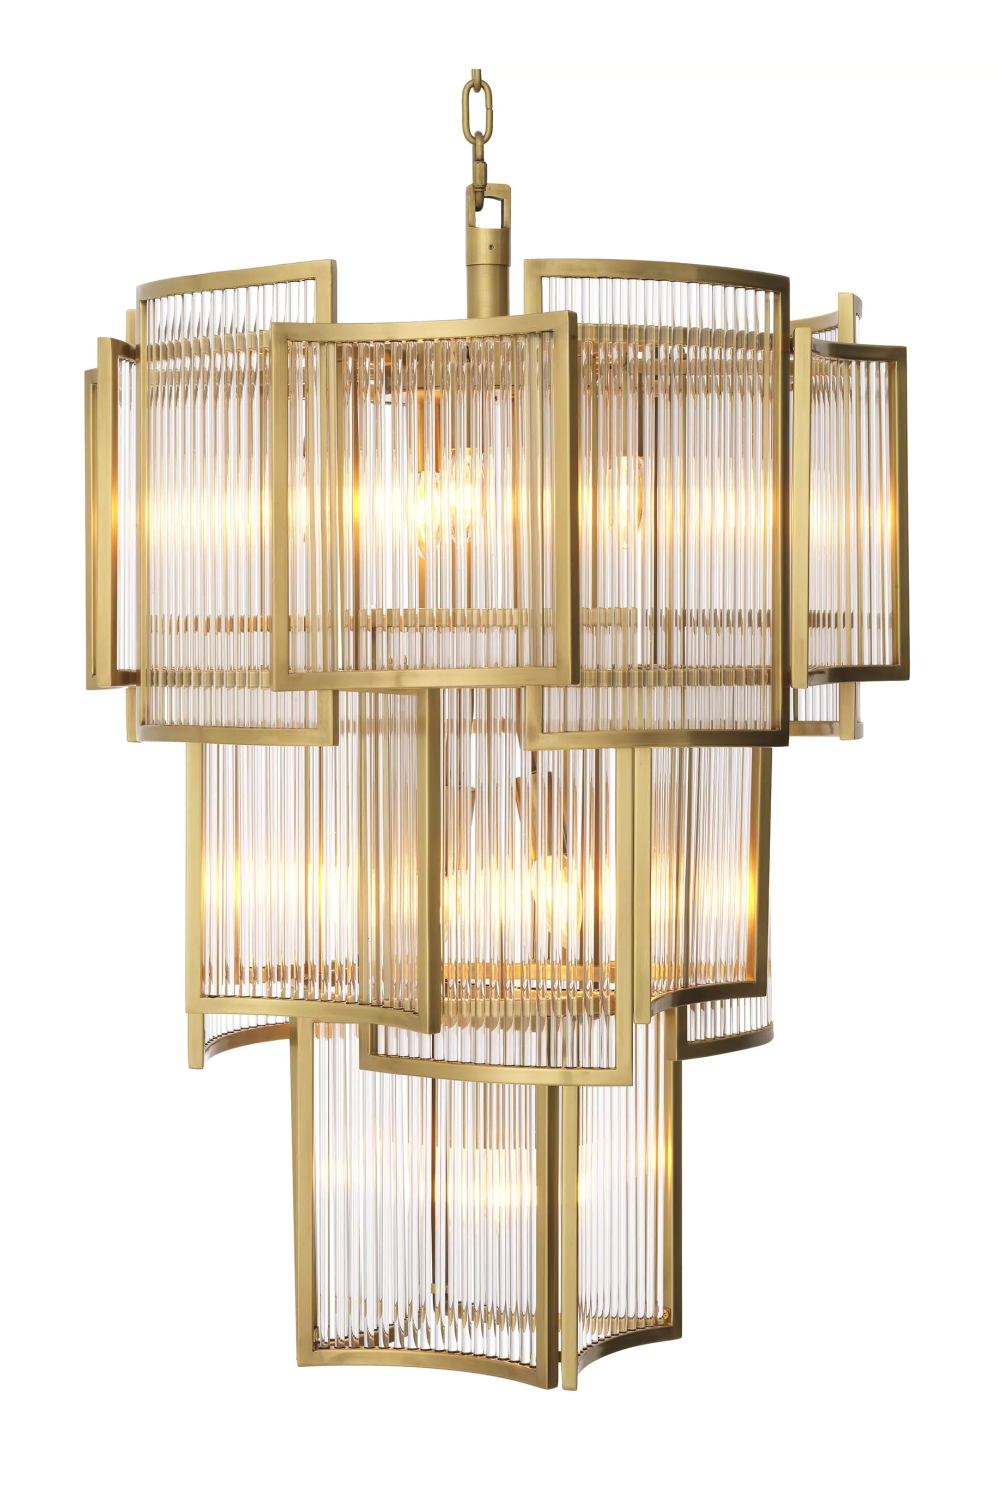 Chandelier In Deco The Elegant Beauty of Art Deco Lighting